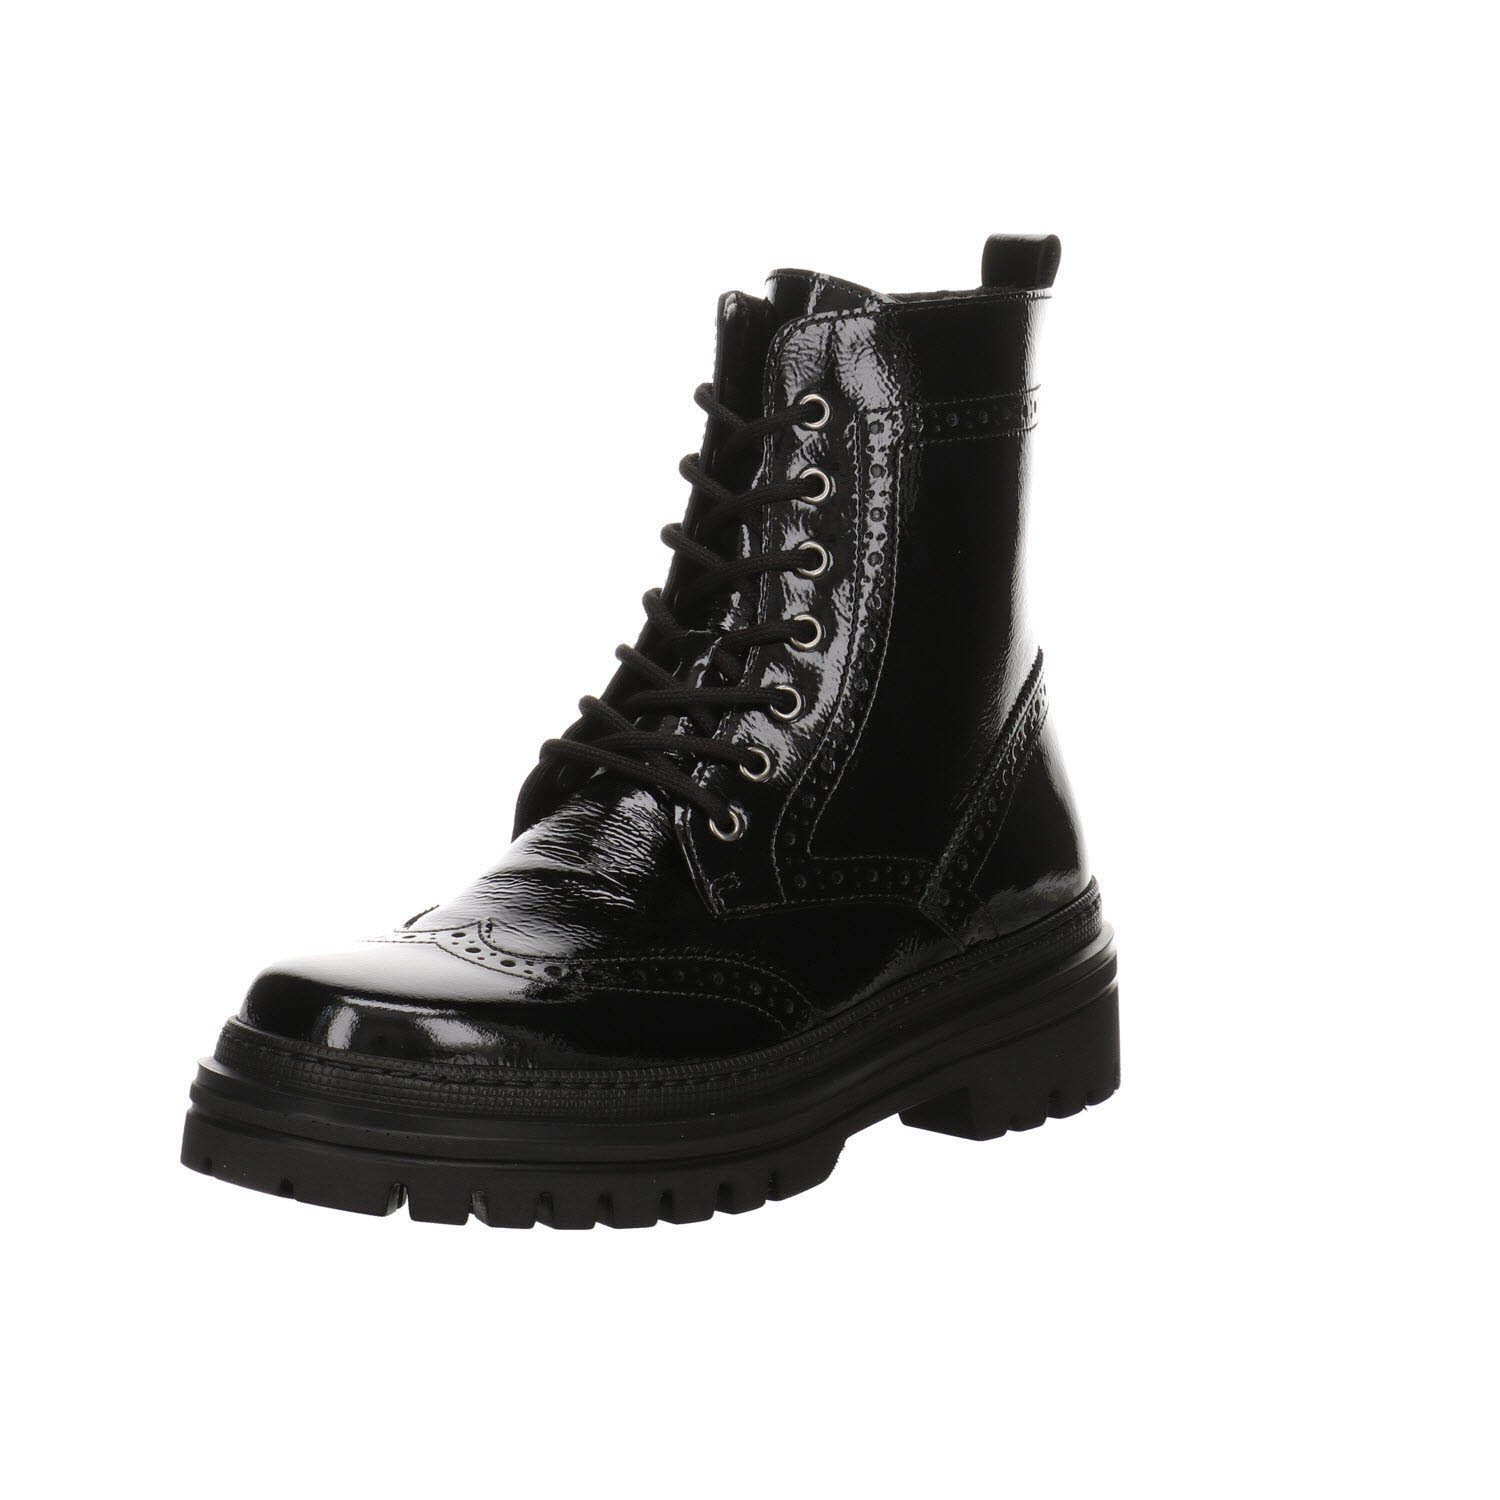 Gabor »Schuhe Stiefel Boots Elegant Freizeit Glattleder« Schnürstiefel  online kaufen | OTTO